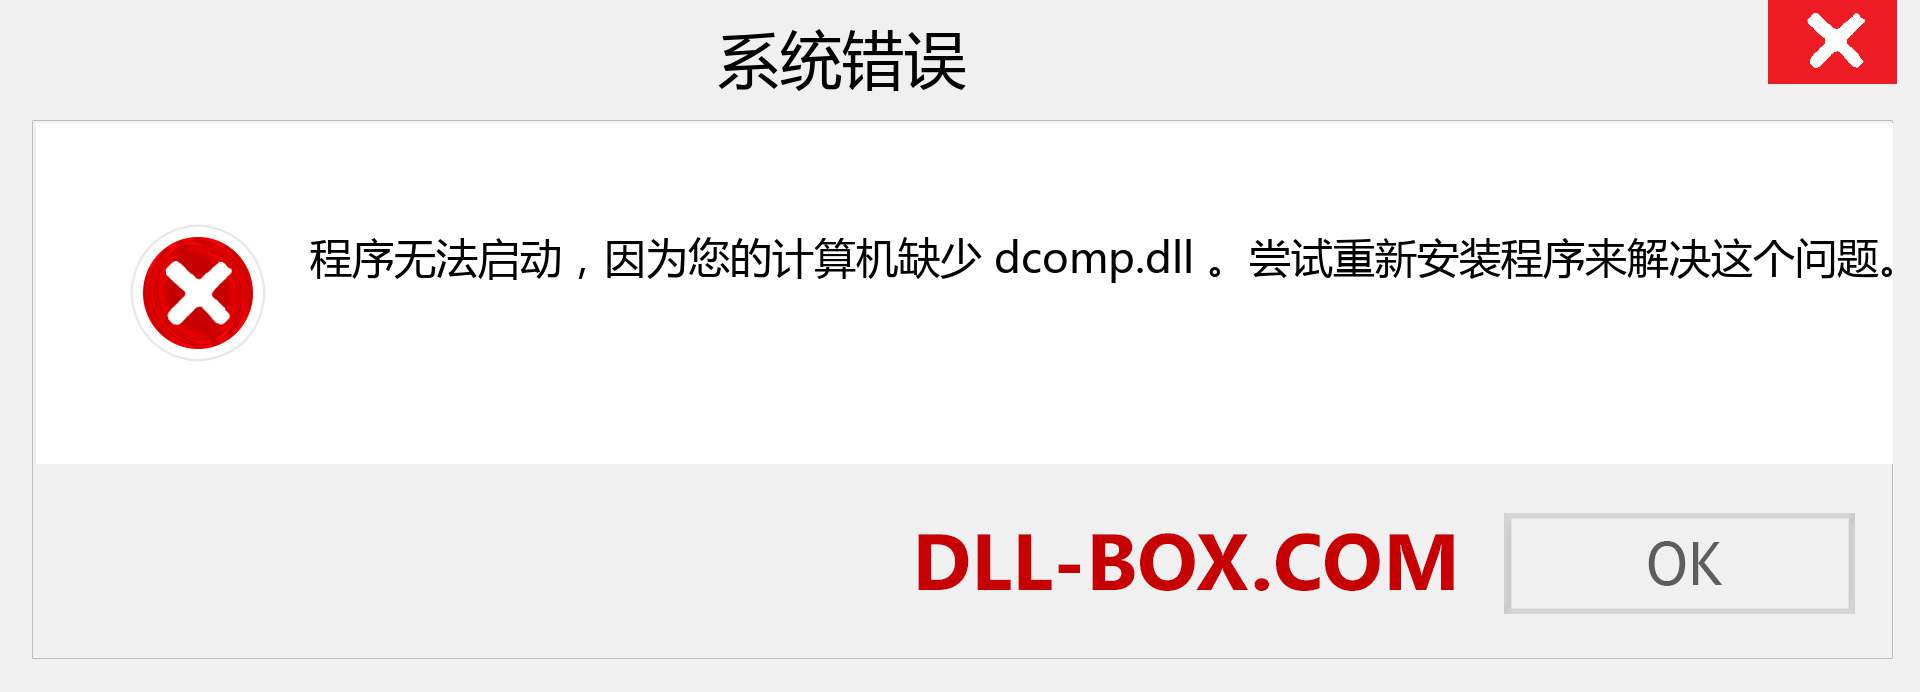 dcomp.dll 文件丢失？。 适用于 Windows 7、8、10 的下载 - 修复 Windows、照片、图像上的 dcomp dll 丢失错误